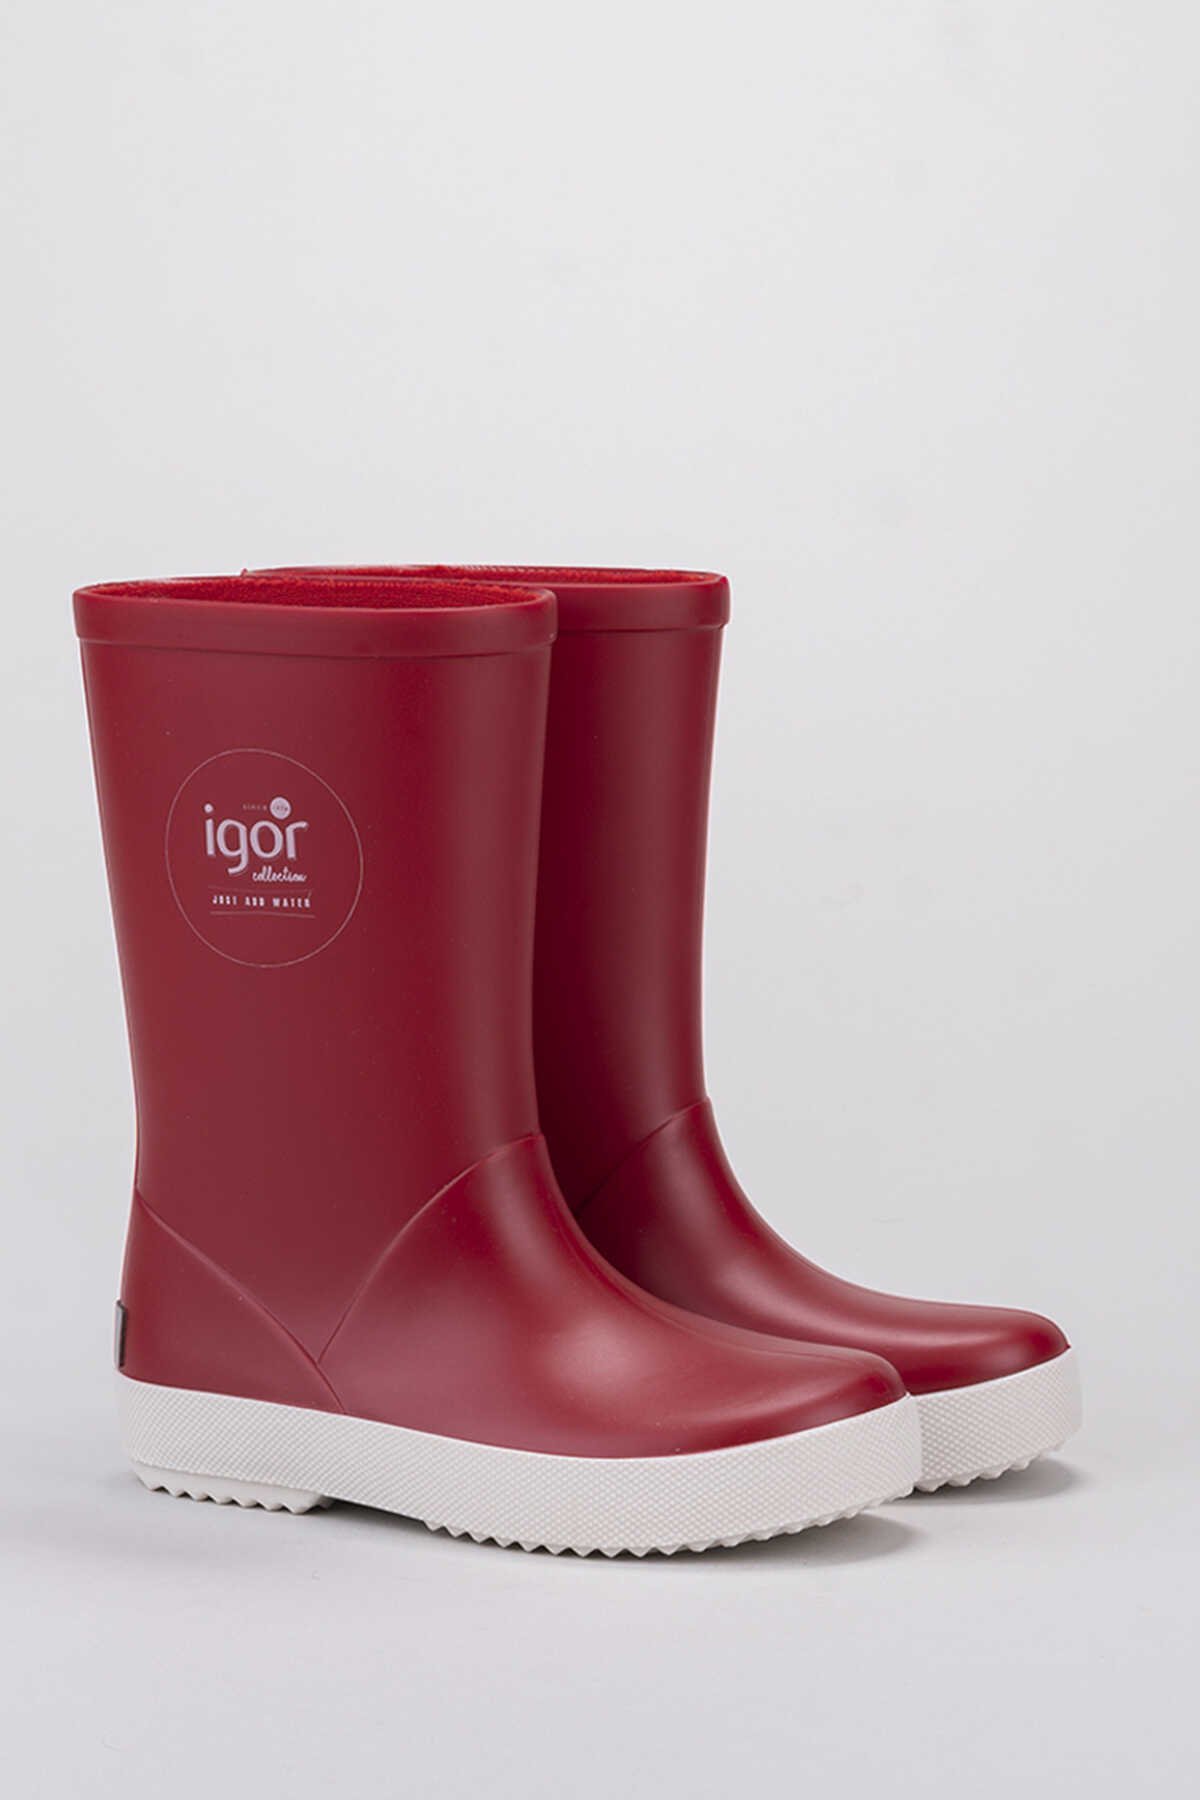 Igor - Igor SPLASH NAUTICO Yağmur Çizmesi Kız Çocuk Ayakkabı Kırmızı